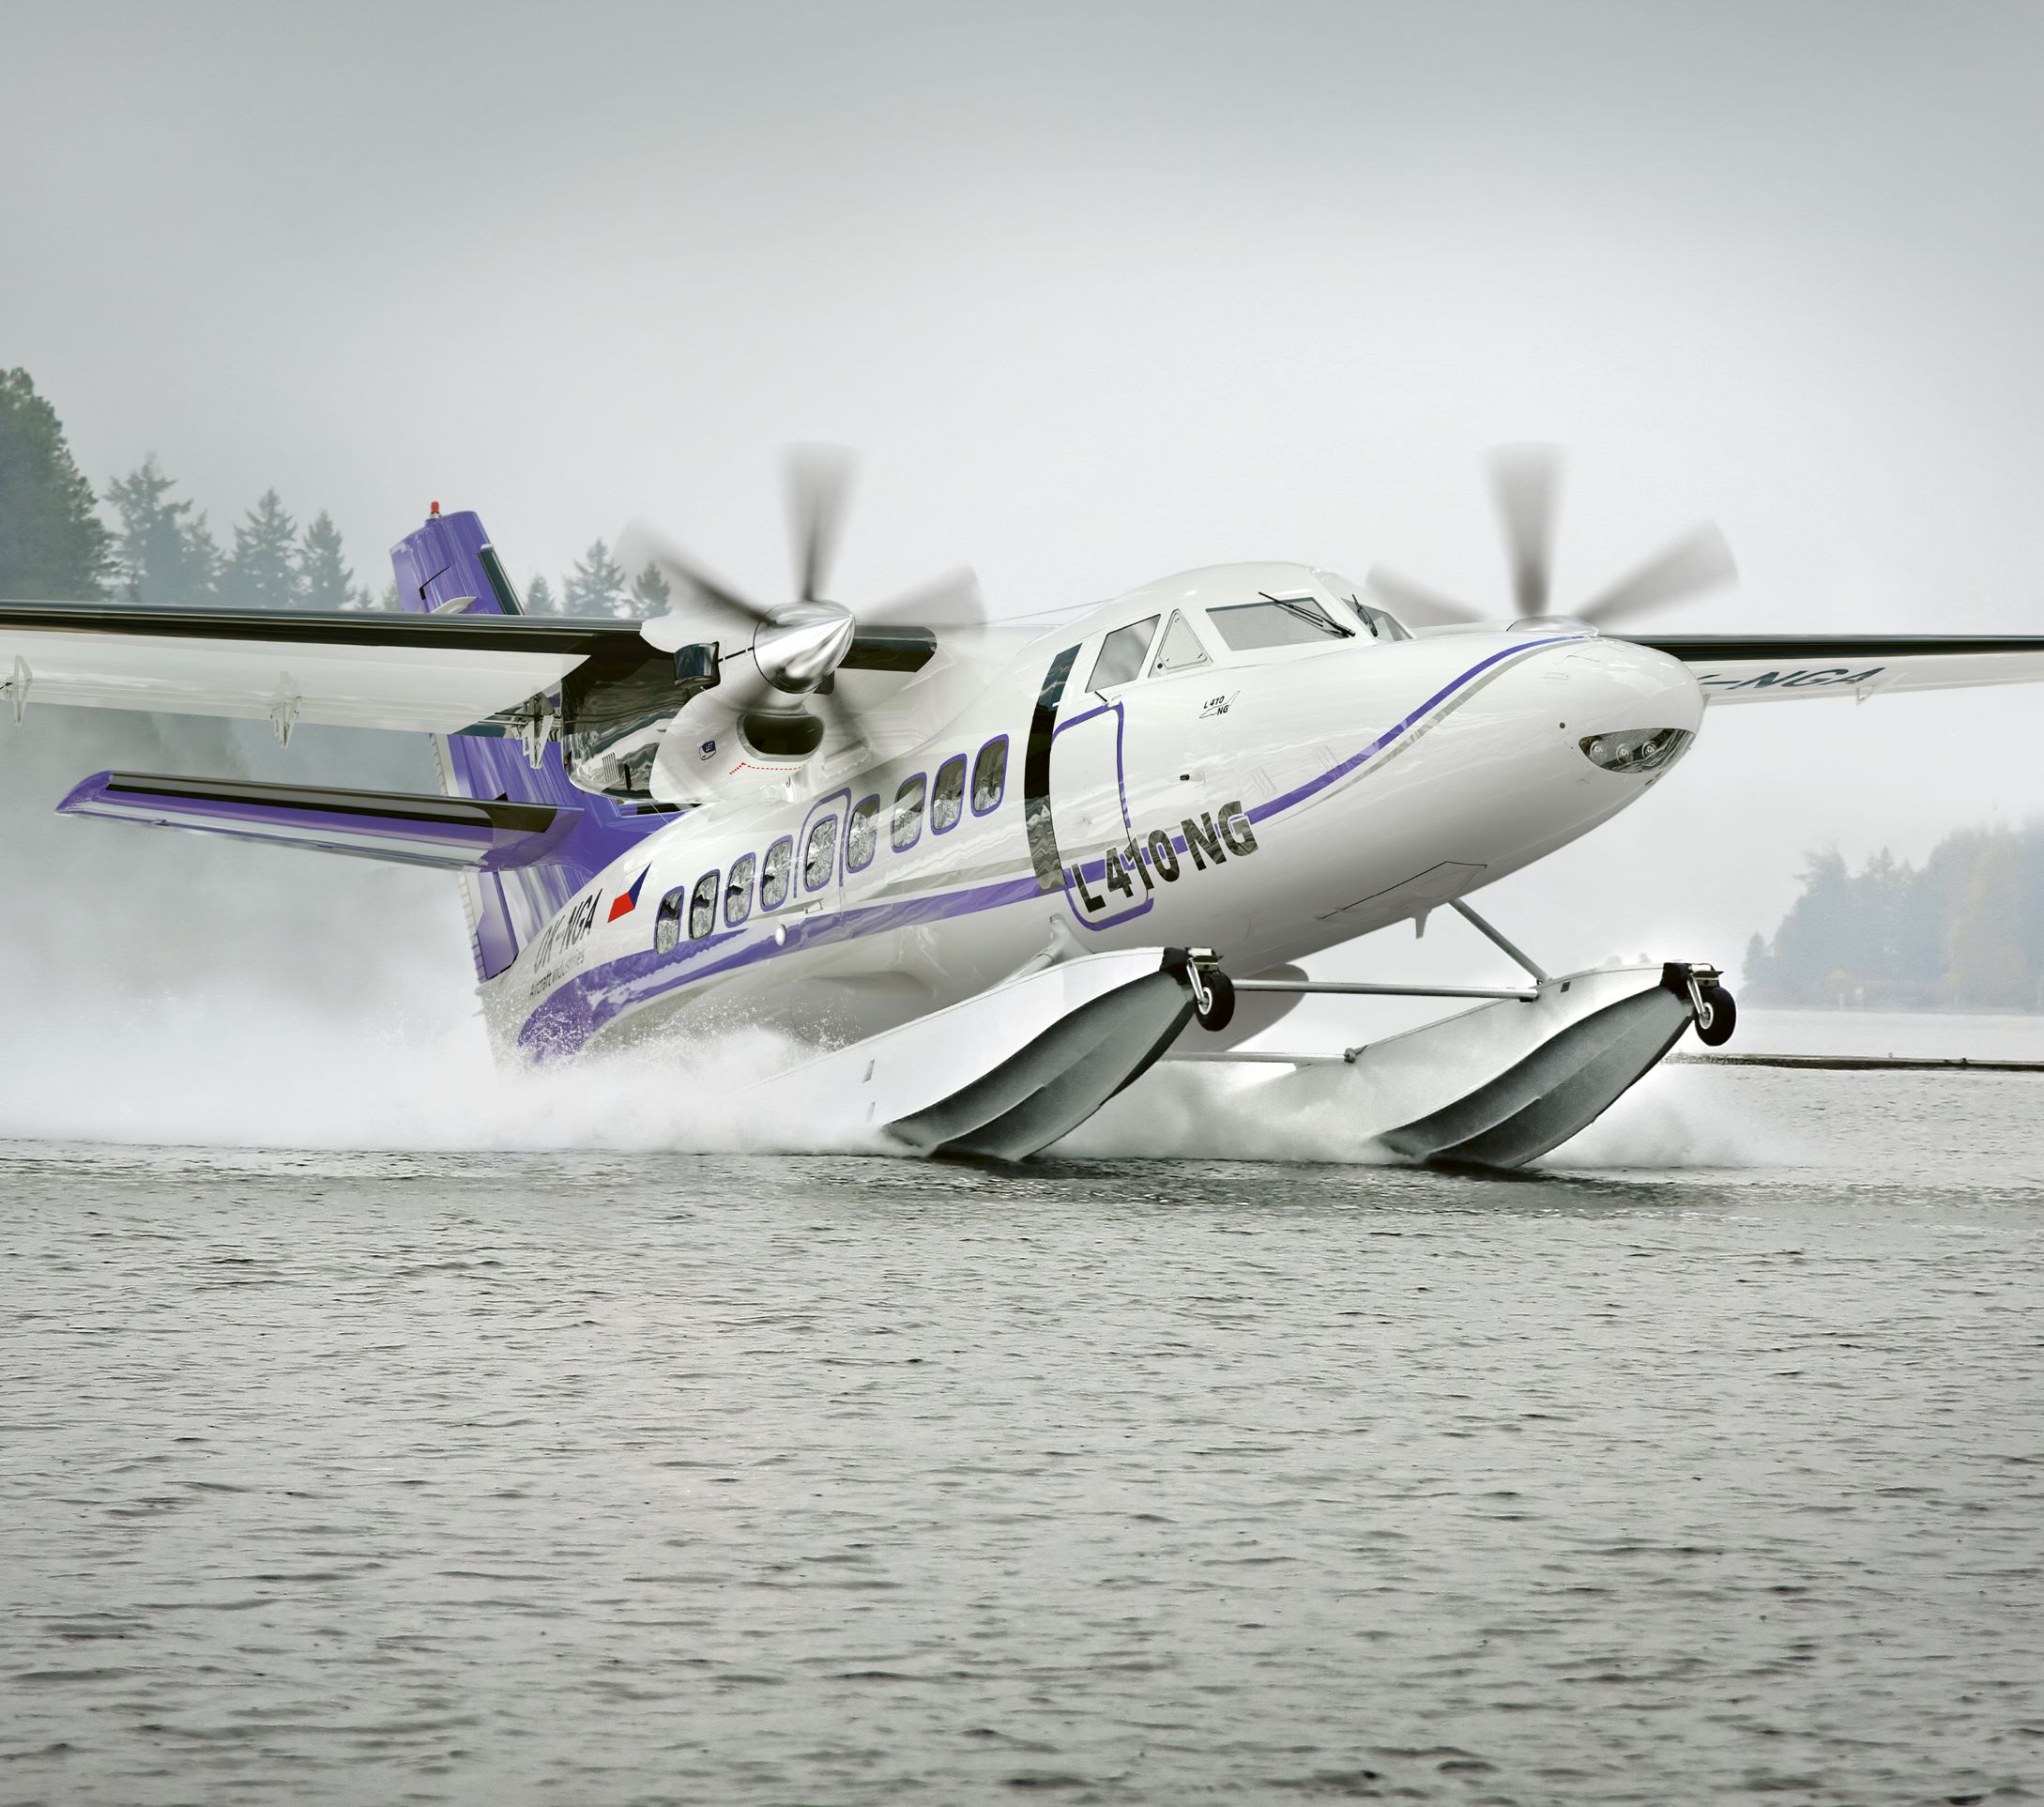 Aircraft Industries vyvíjí plovákovou verzi letounu L 410 NG